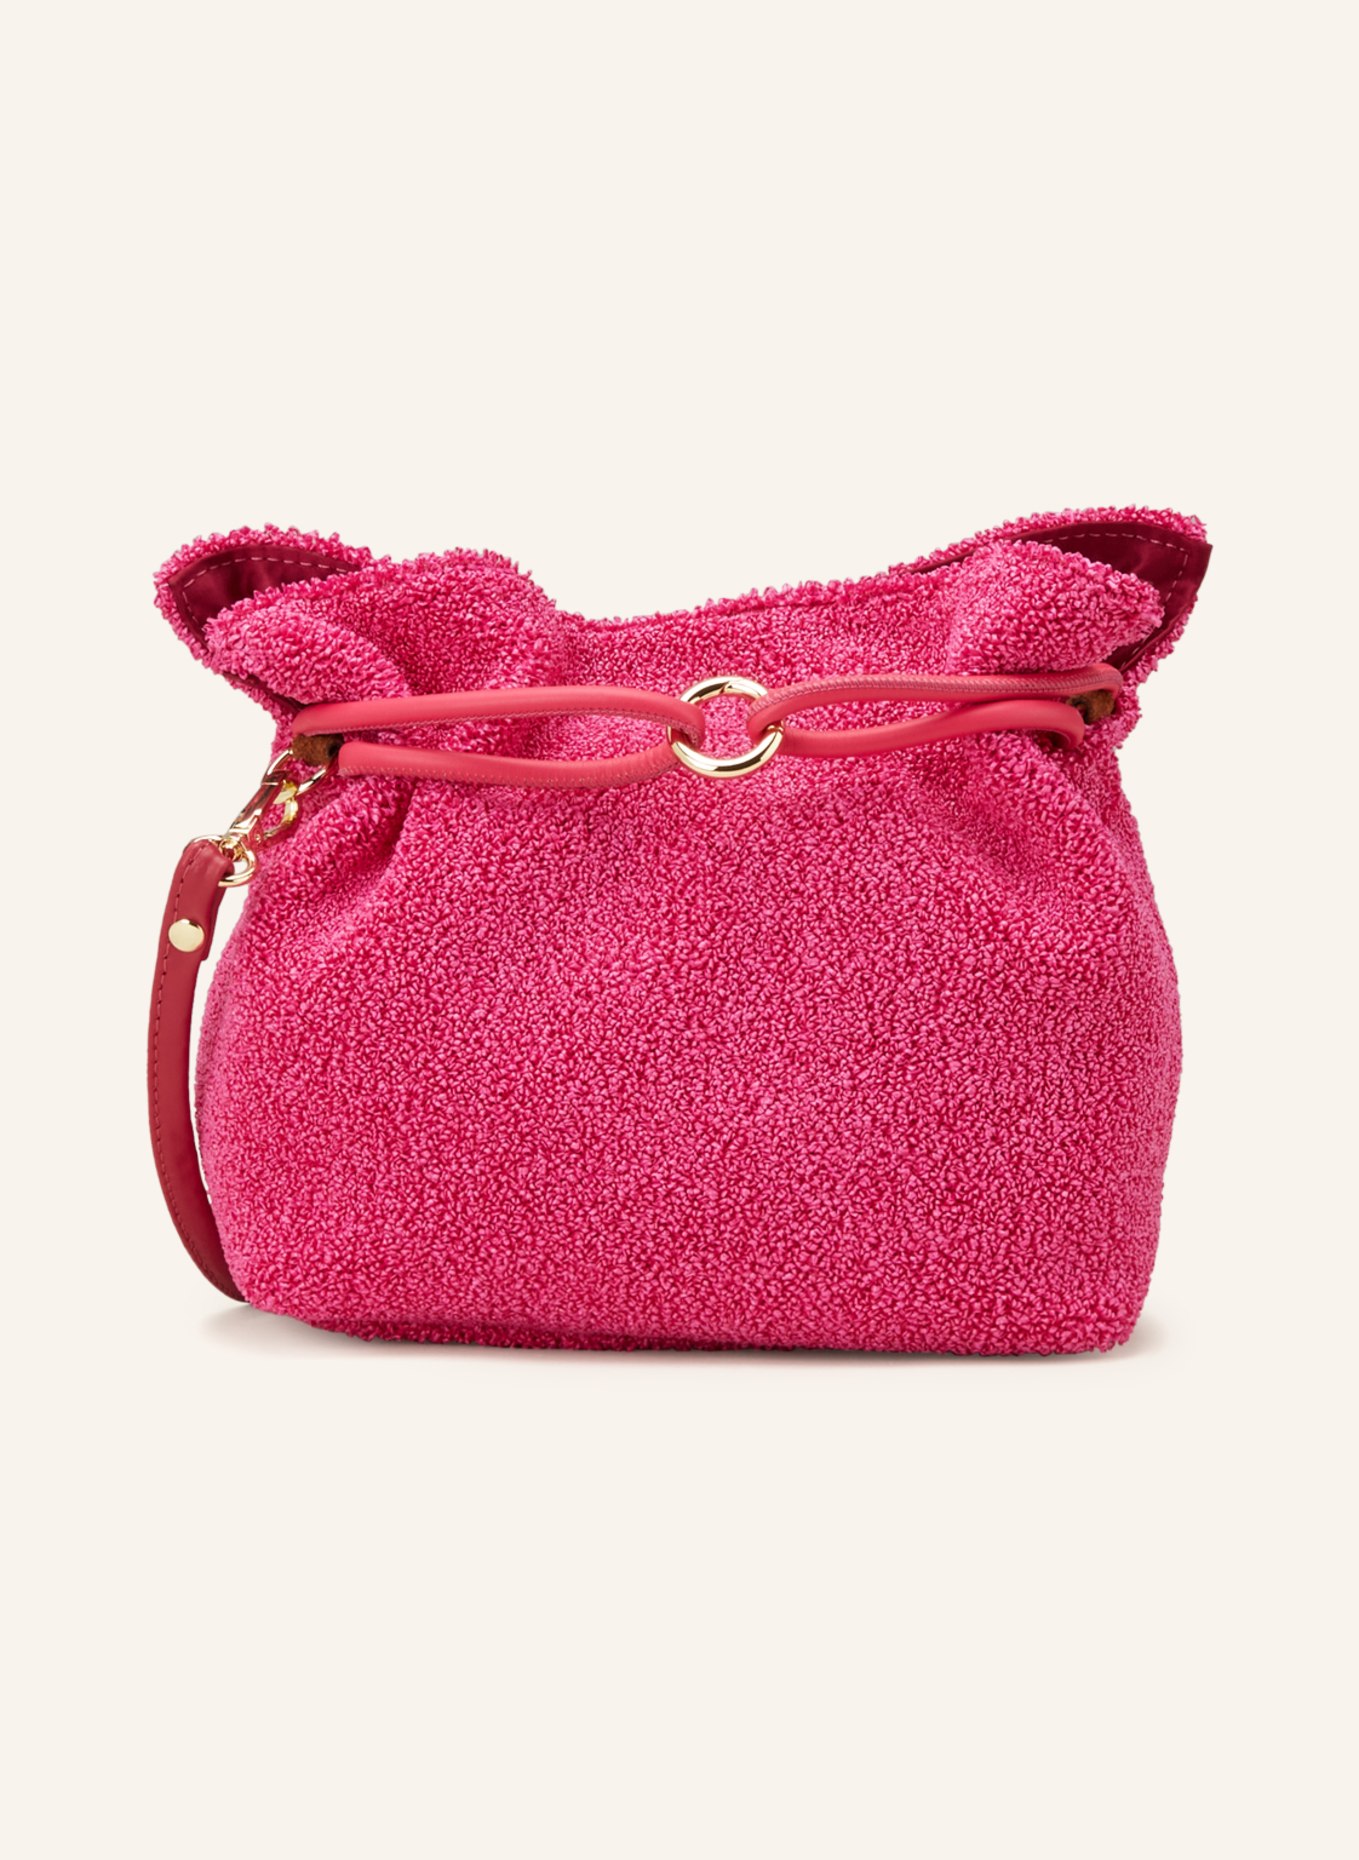 ViaMailBag Handtasche ARUBA SOFT, Farbe: PINK (Bild 1)